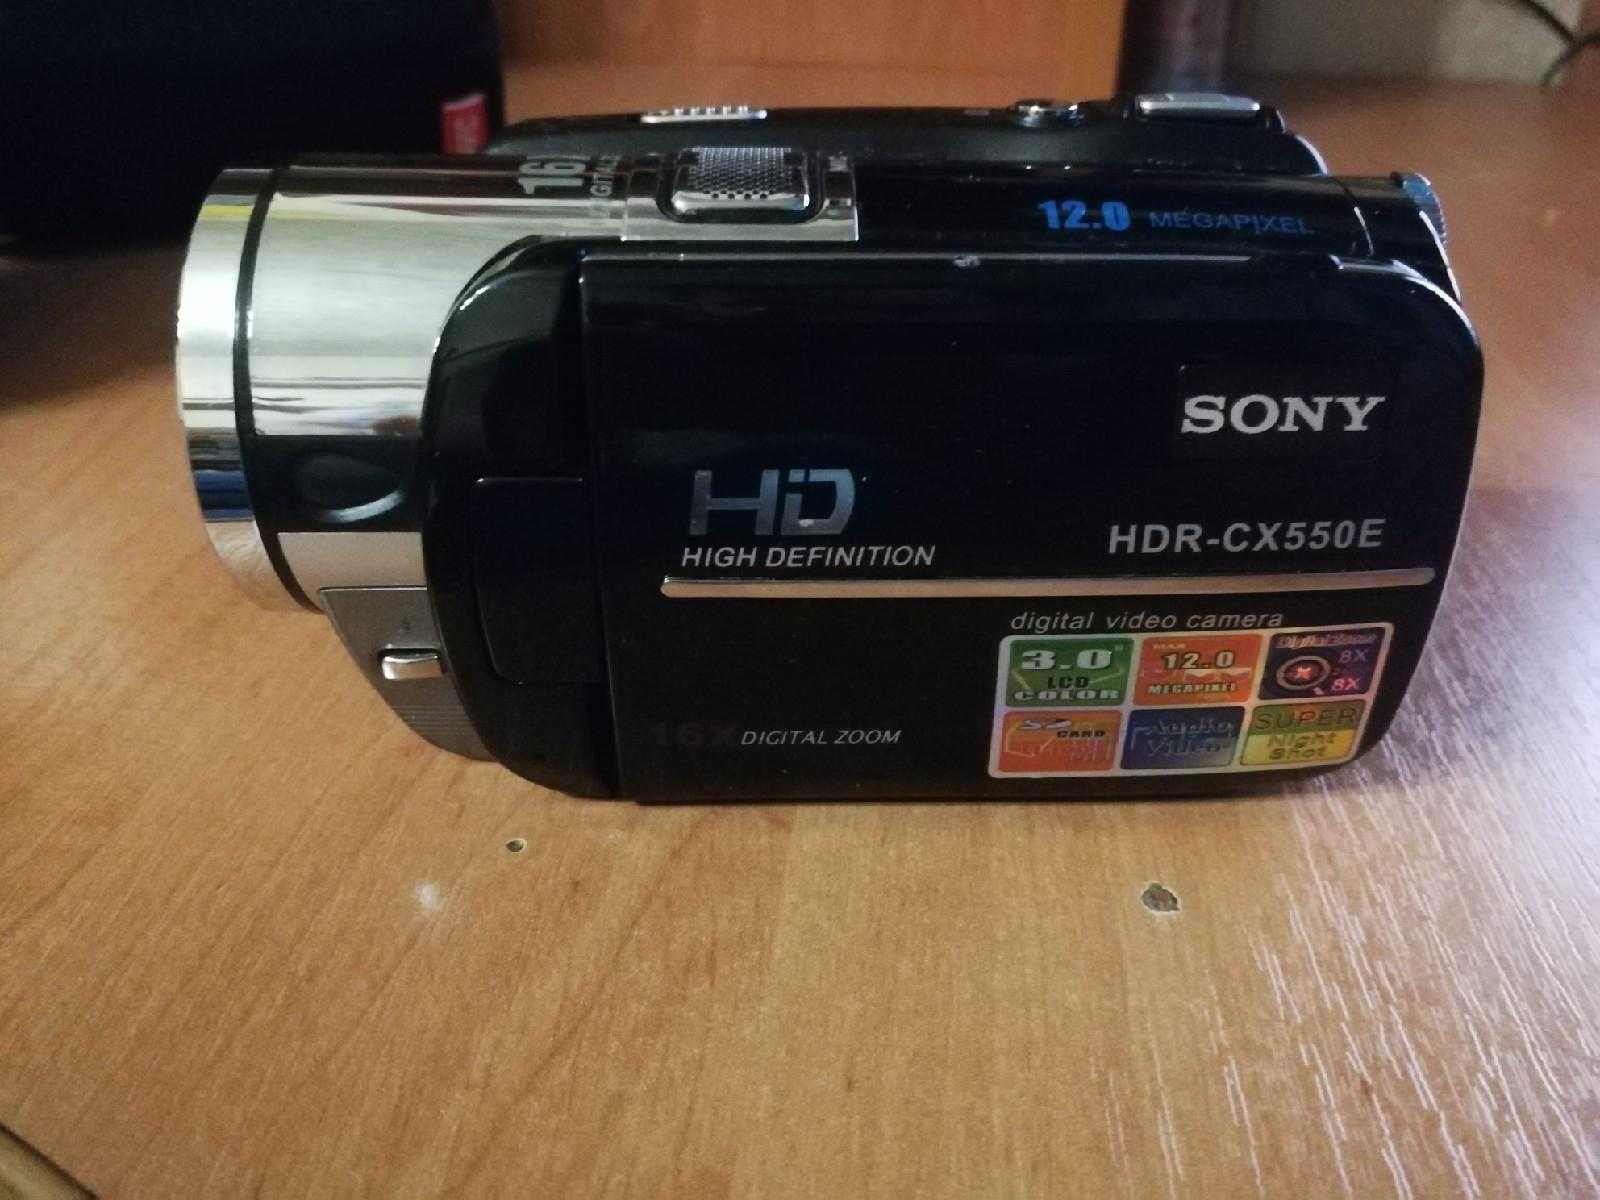 Sony hdr-cx550e - купить  в самарская область, скидки, цена, отзывы, обзор, характеристики - видеокамеры